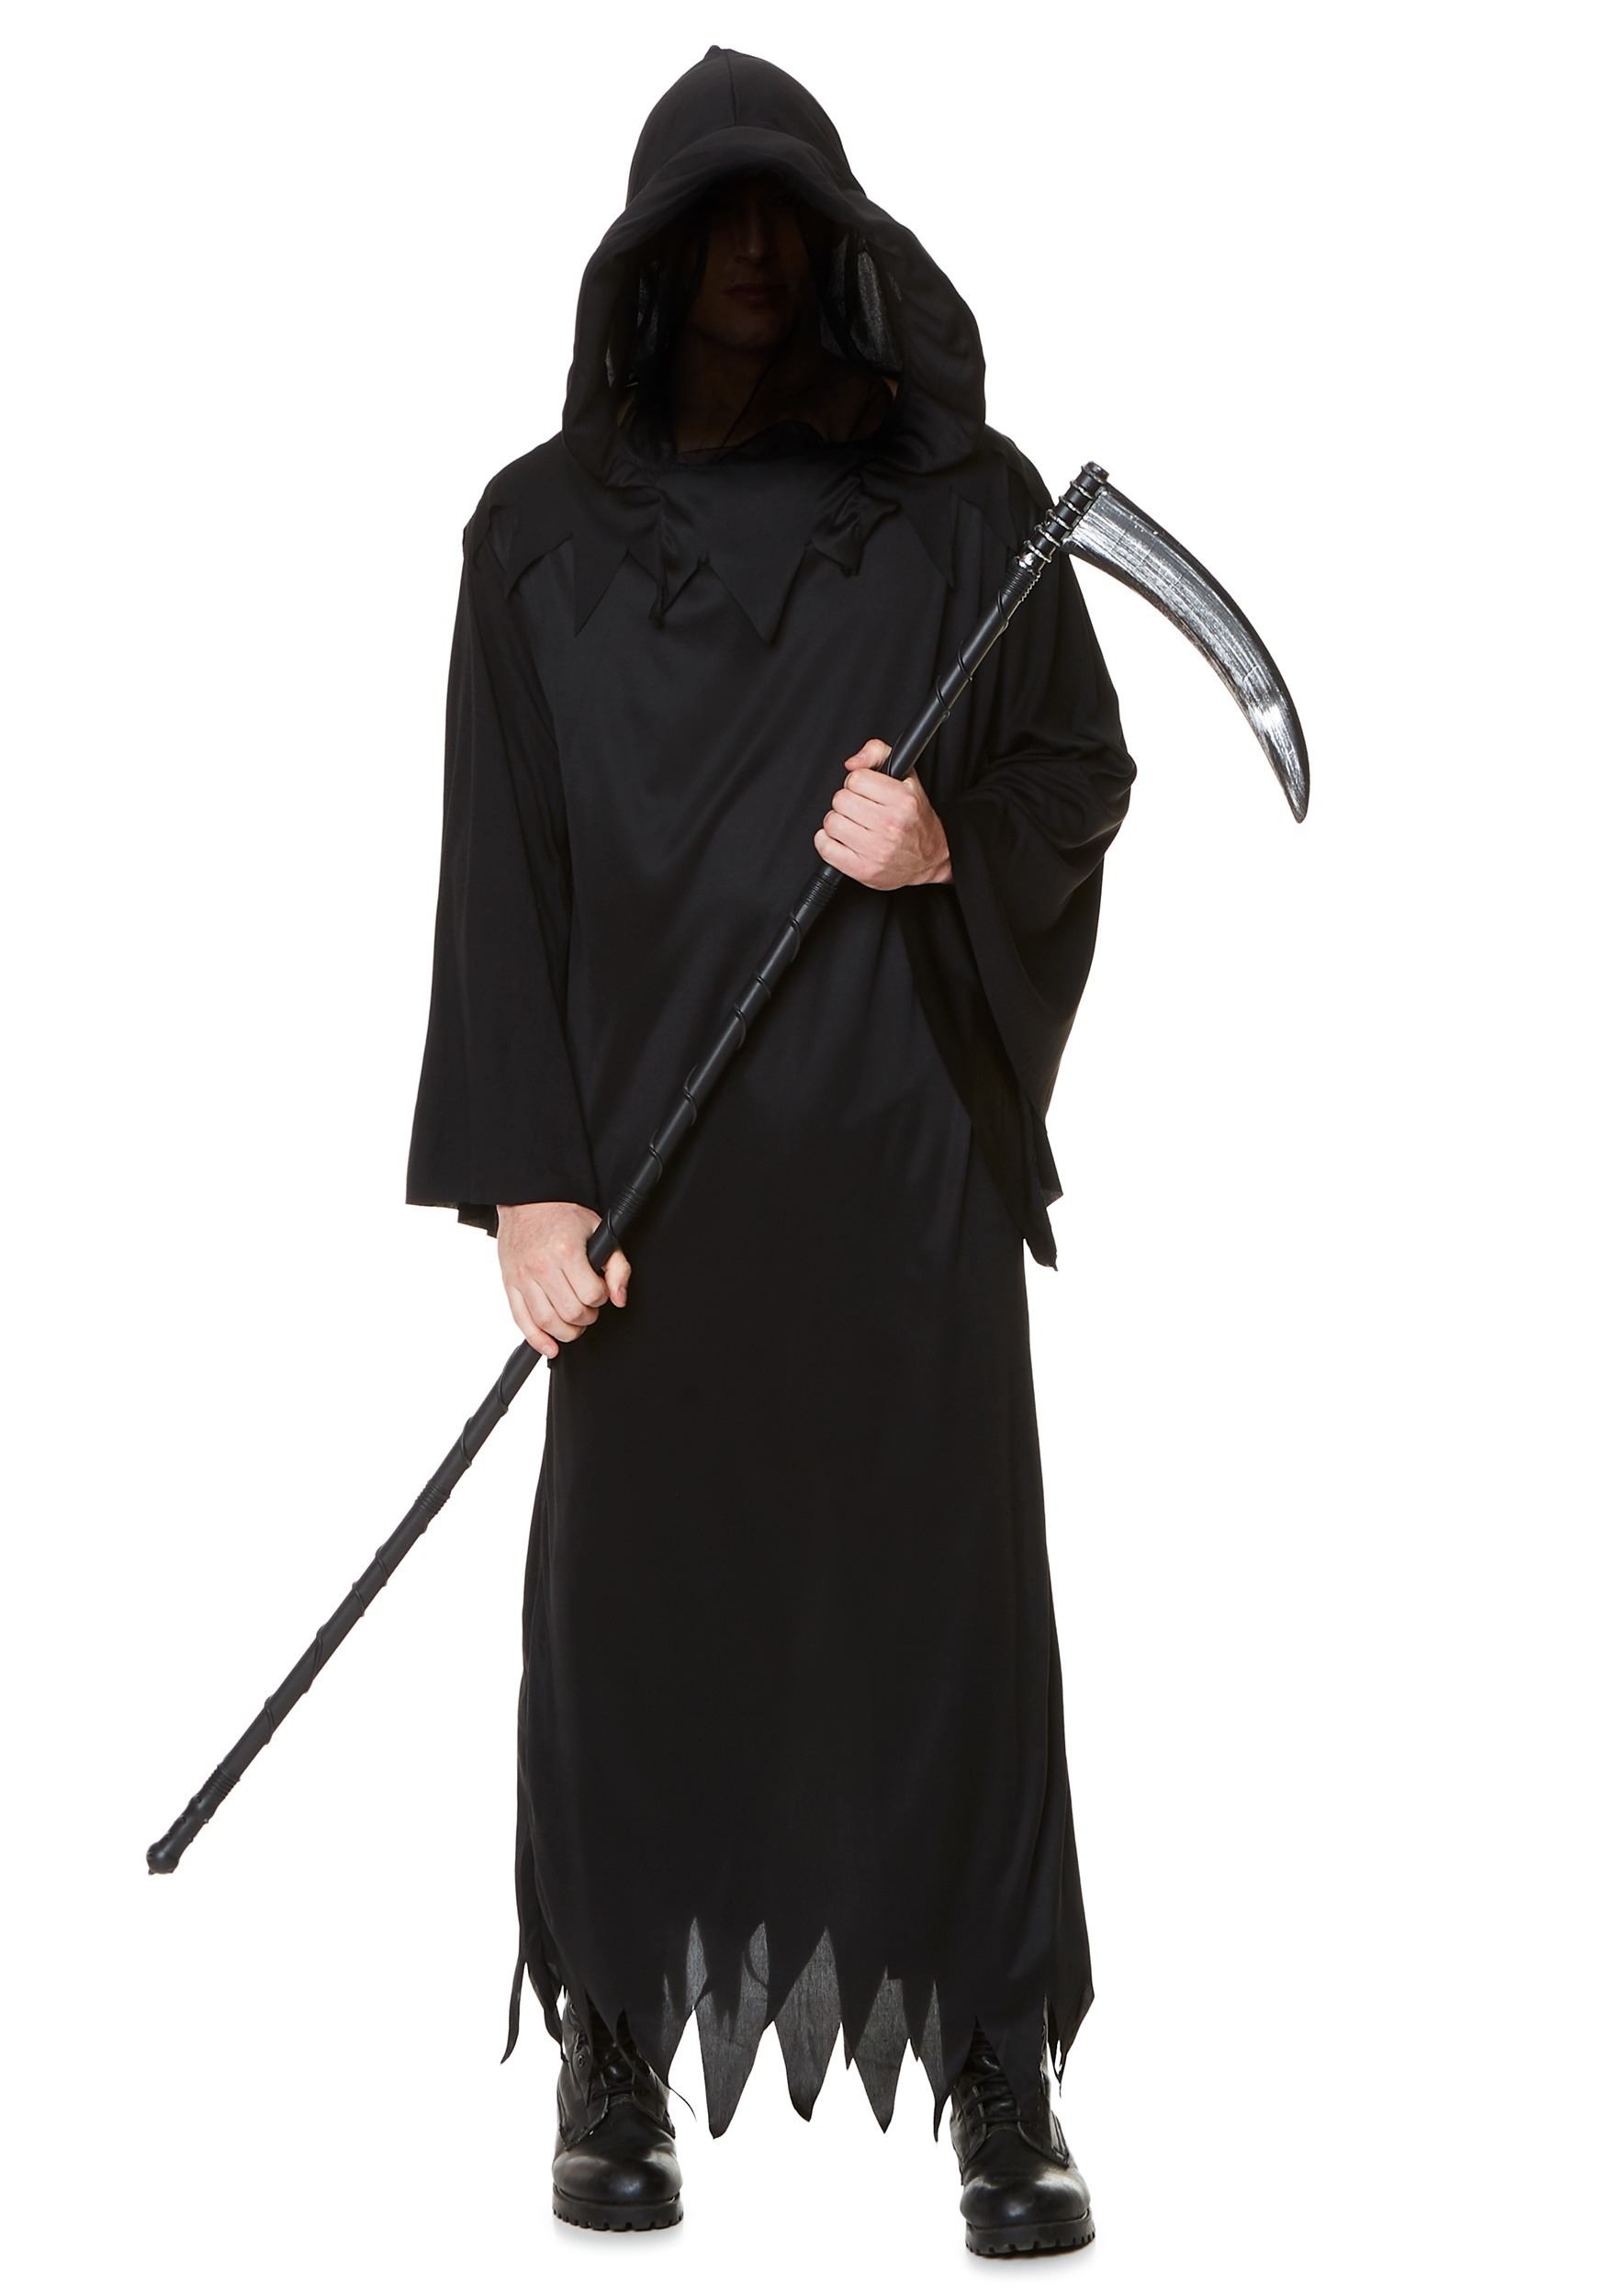 grim reaper costume